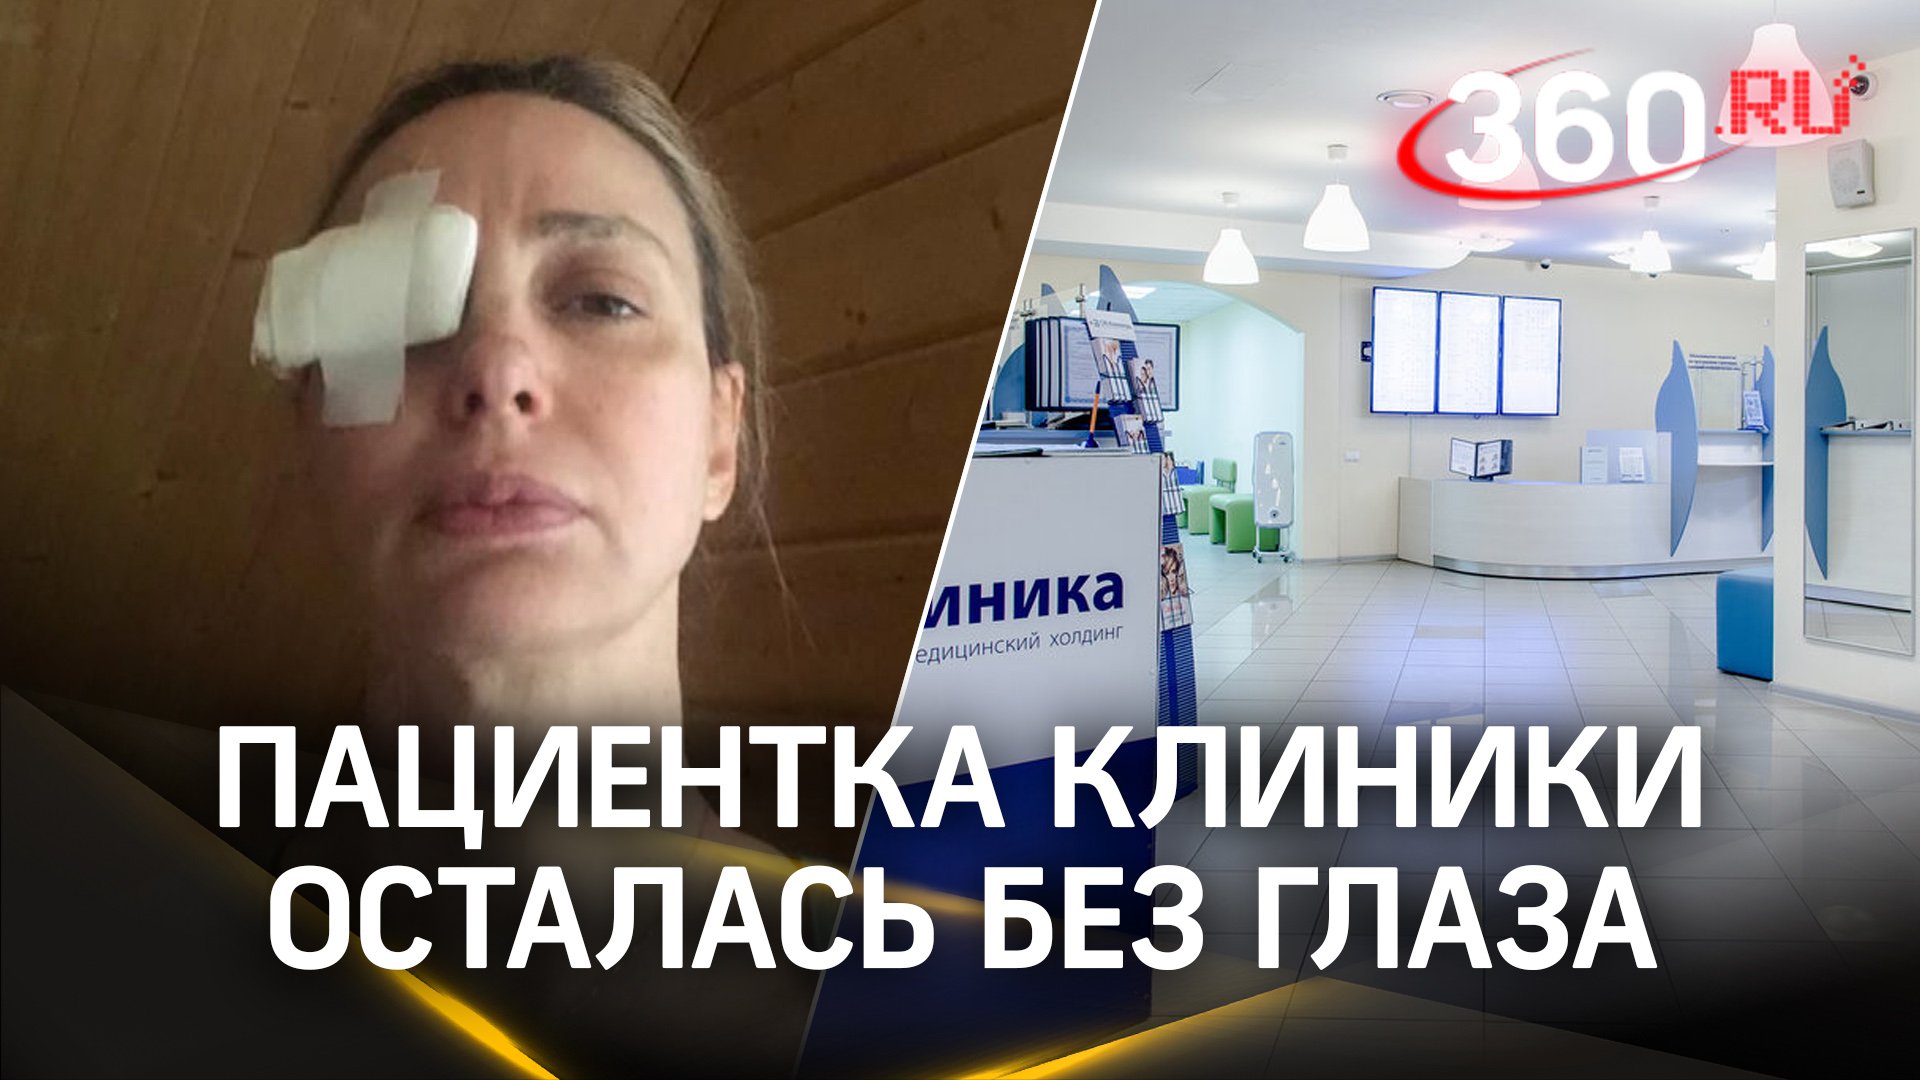 Пациентка московской клинки осталась без глаза